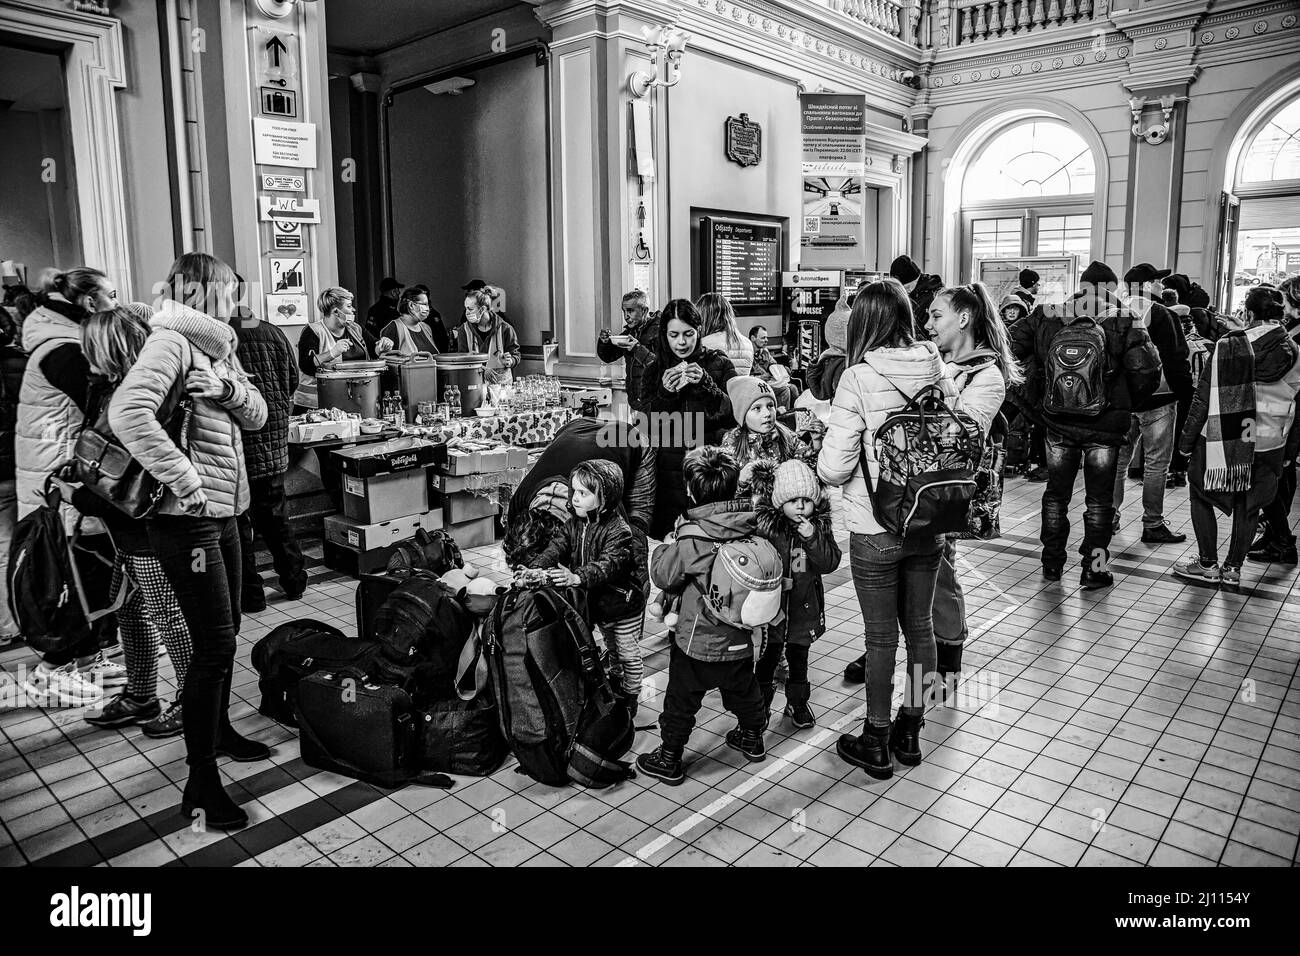 War in Ukraine, refugee people in Przemysl, Lviv Stock Photo